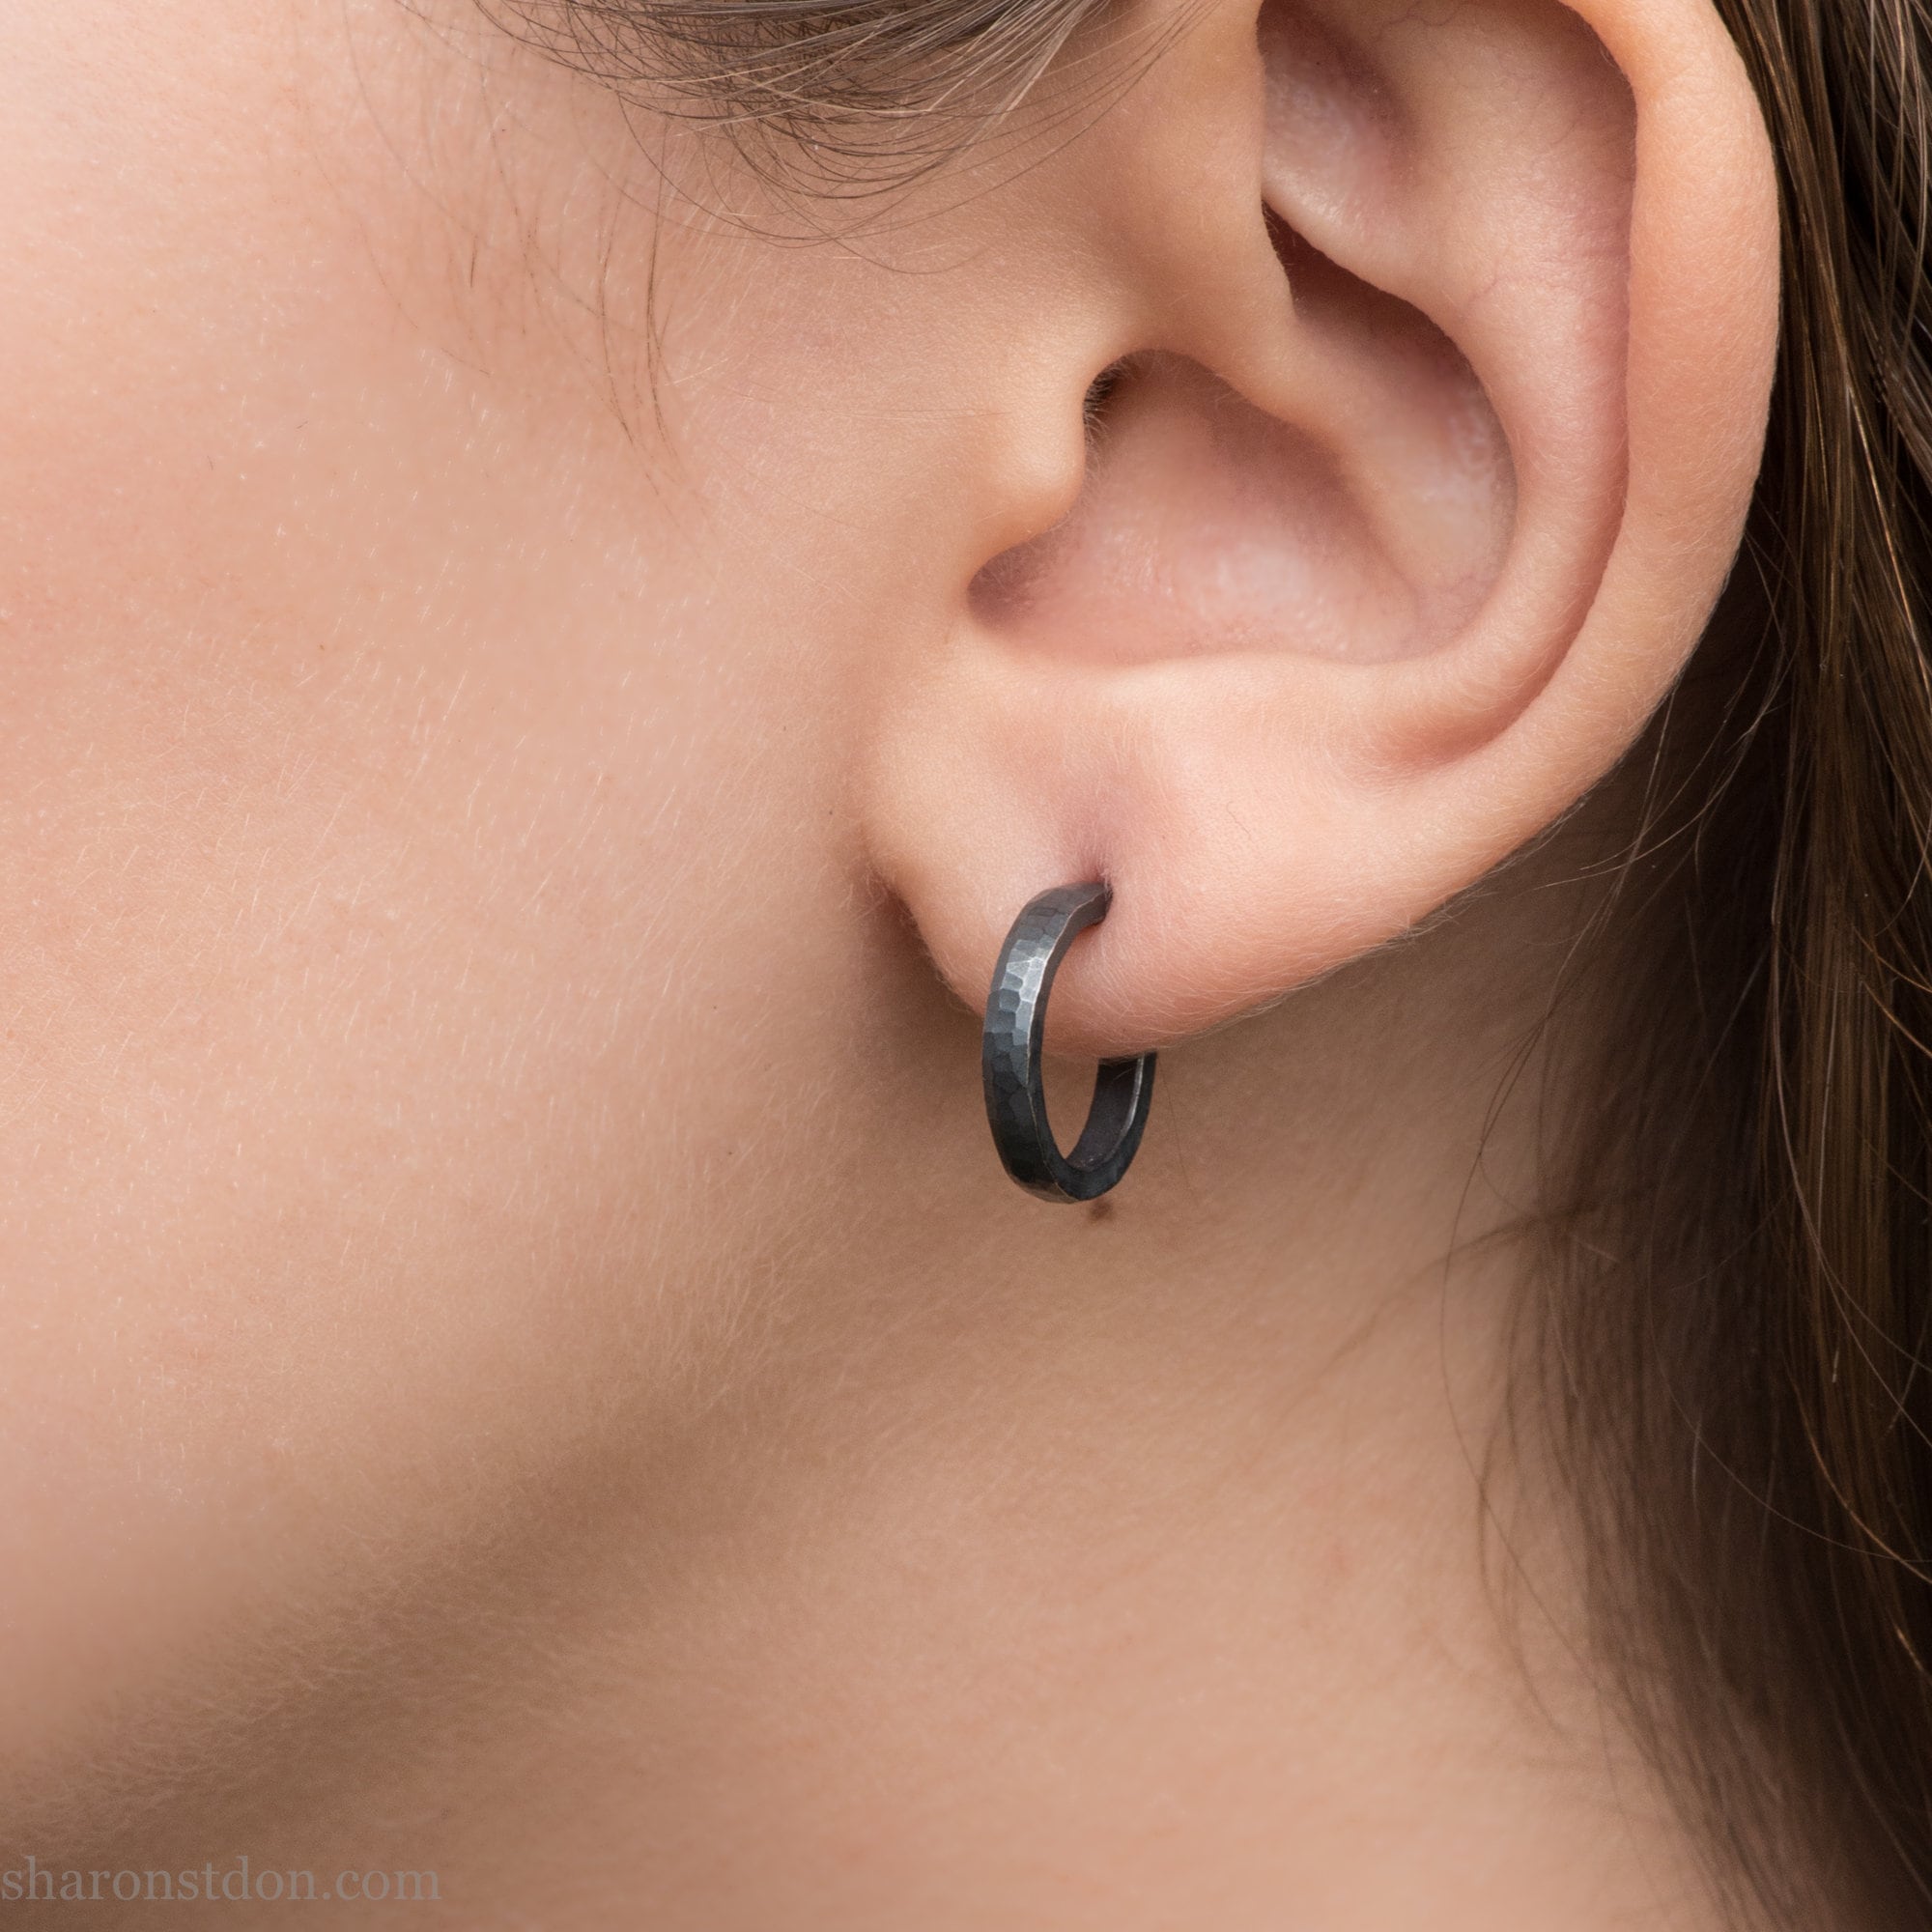 Buy Mens Earrings Black Huggie Hoop Ear Cartilage Piercing Online in India   Etsy